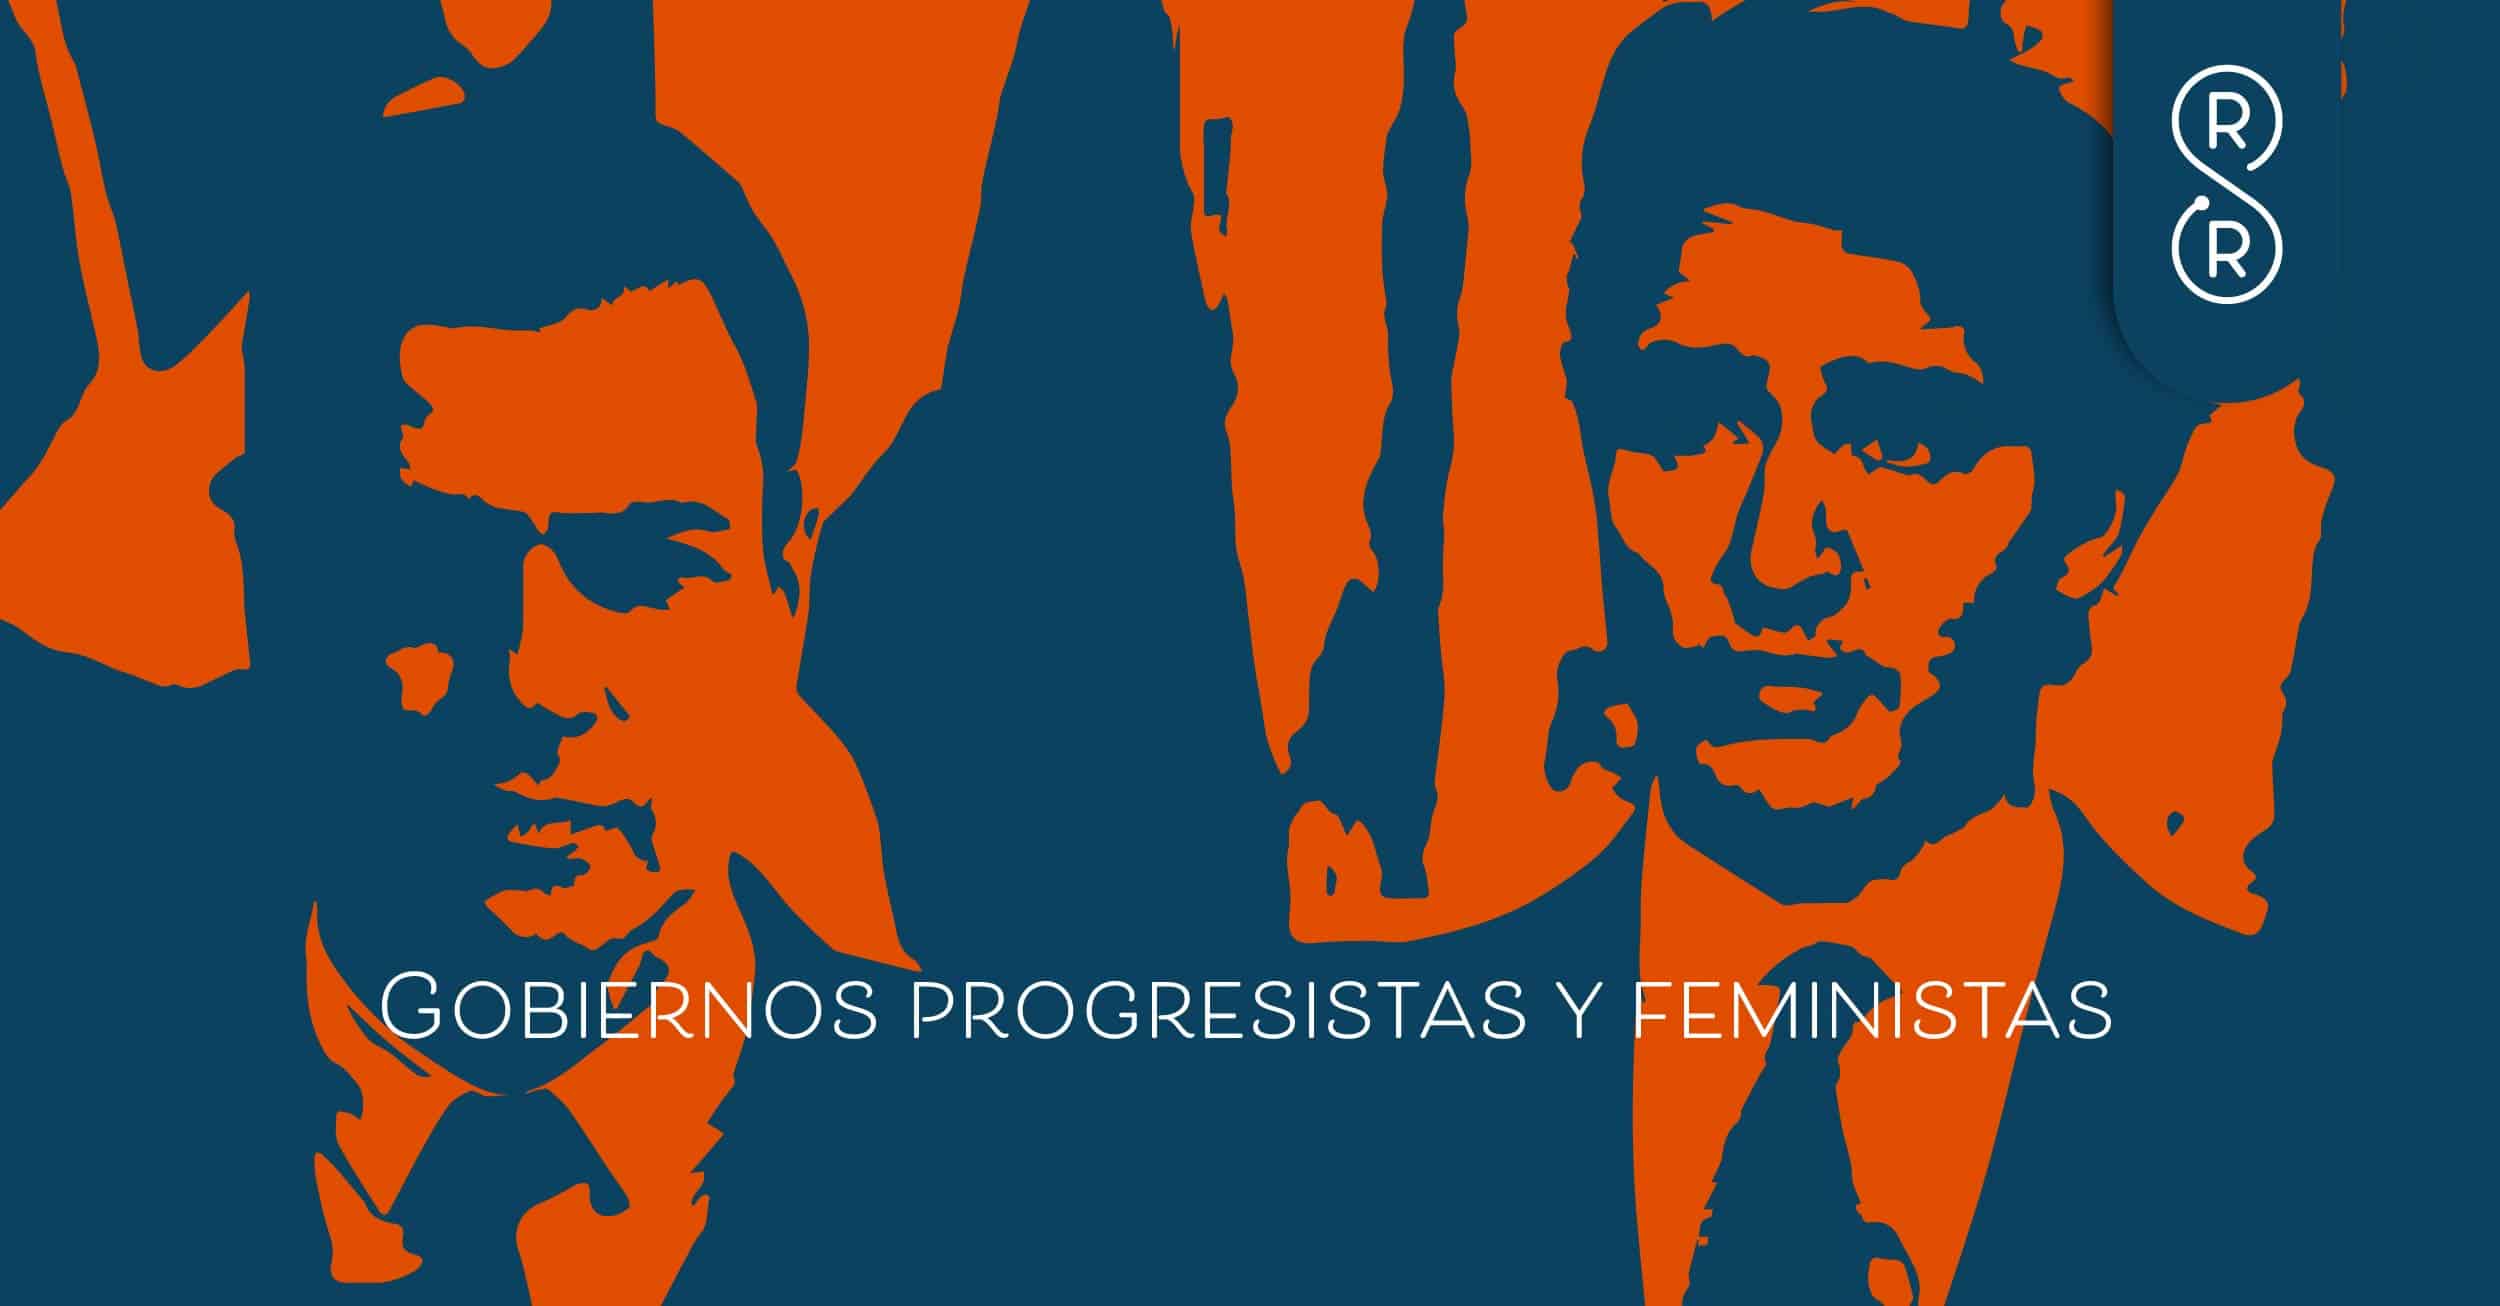 Propuestas de gobiernos progresistas y feministas